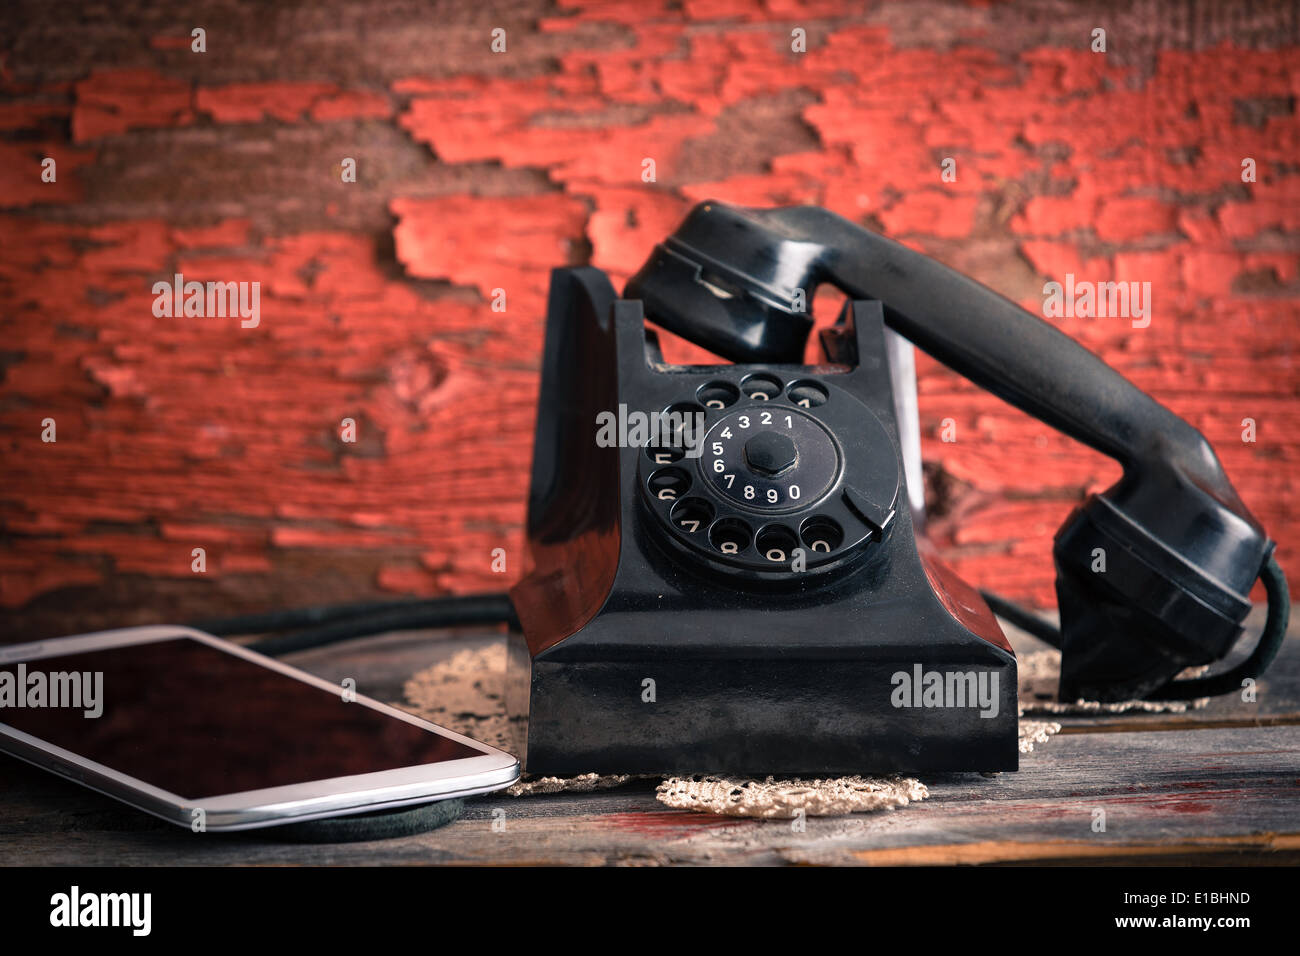 Vecchio telefono rotante con il ricevitore sganciato accanto a un computer tablet che mostra il vecchio stile e moderne forme di co Foto Stock